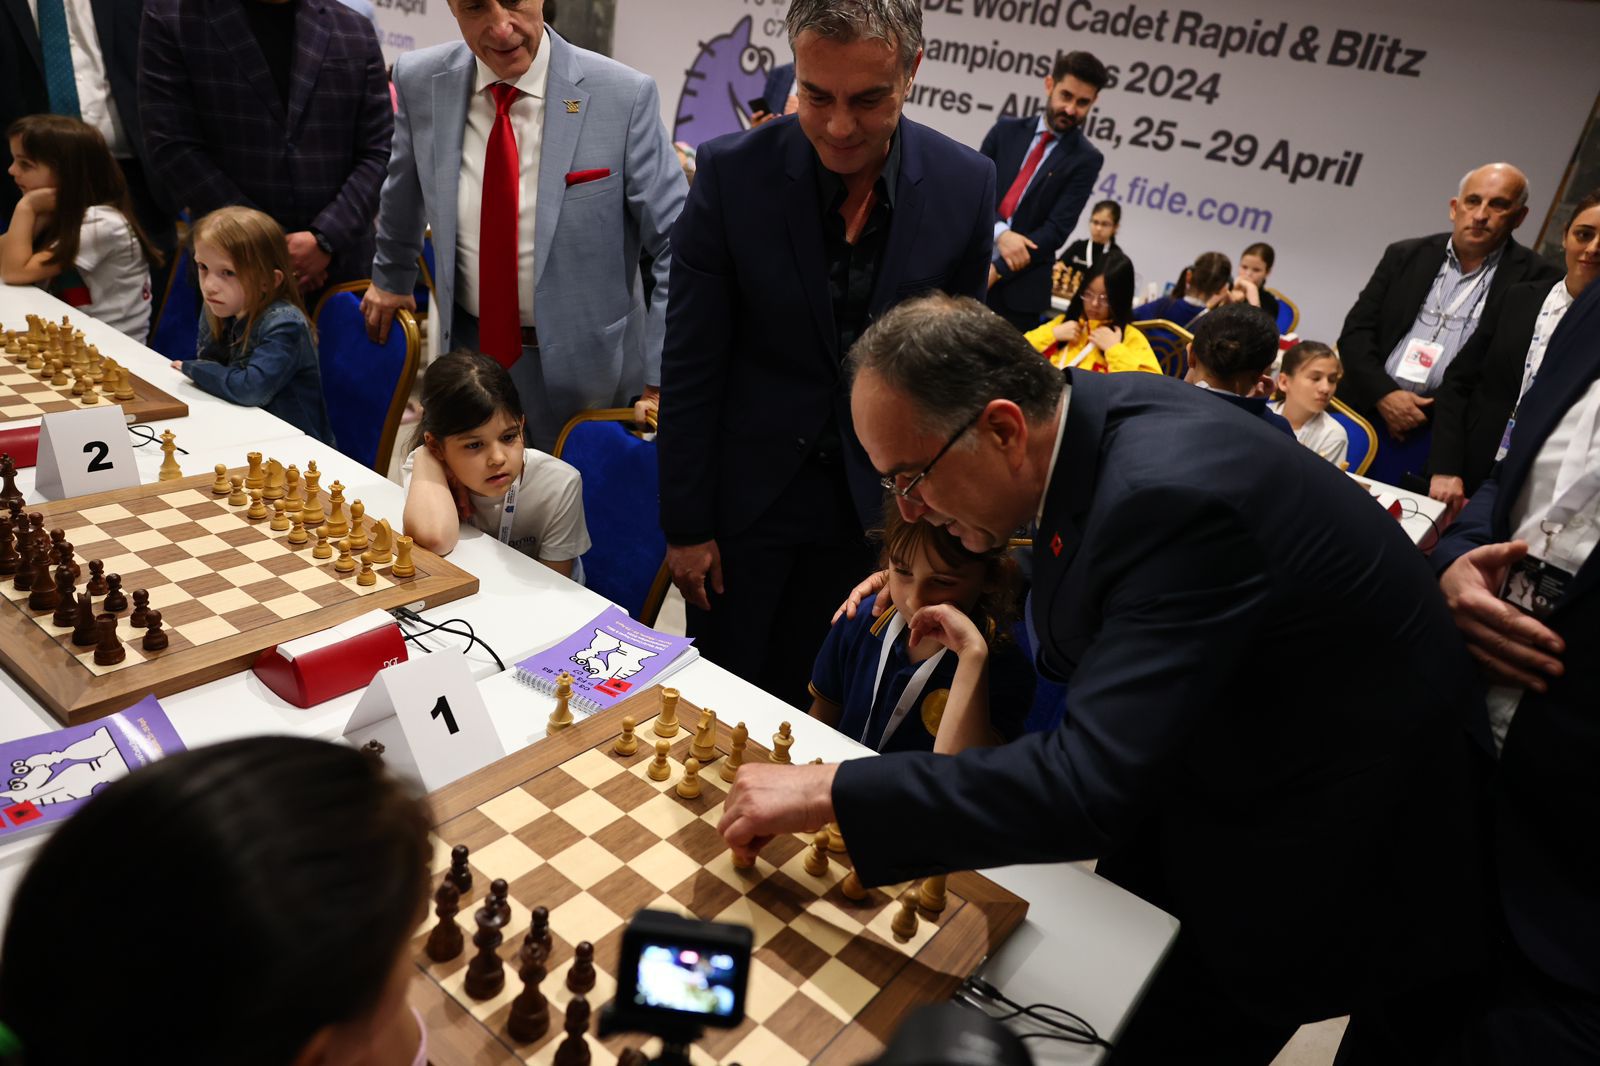 Kampionati Ndërkombëtar i shahut në Durrës, presidenti Bajram Begaj bën lëvizjen e parë: Shqipëria ka shahistët e saj që krenohet ndëkombëtarisht, emra të mëdhenj